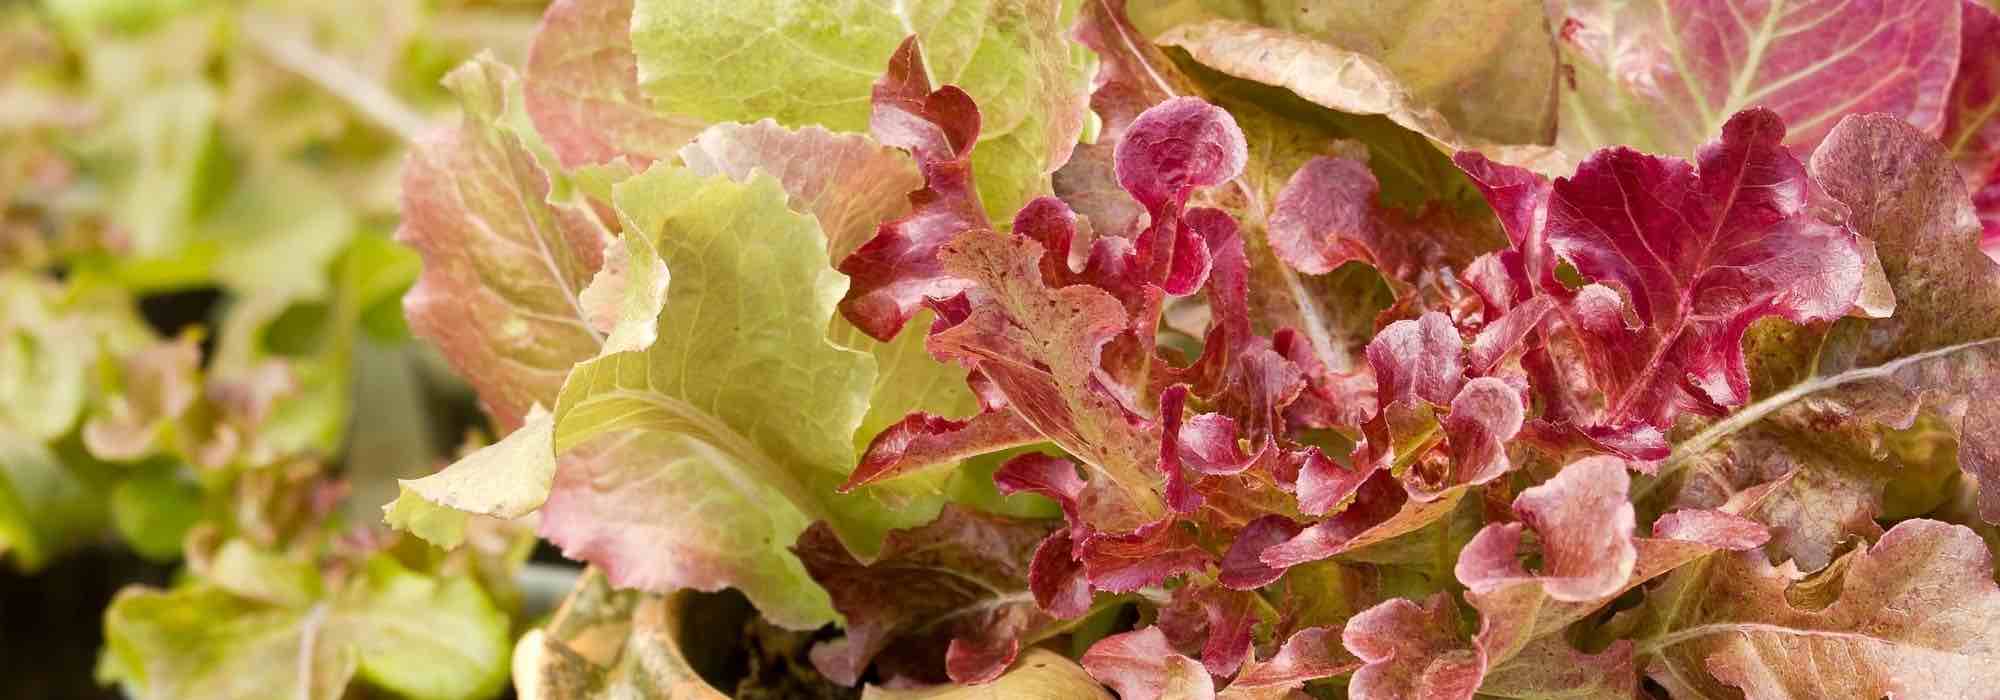 Cultiver la salade en pot